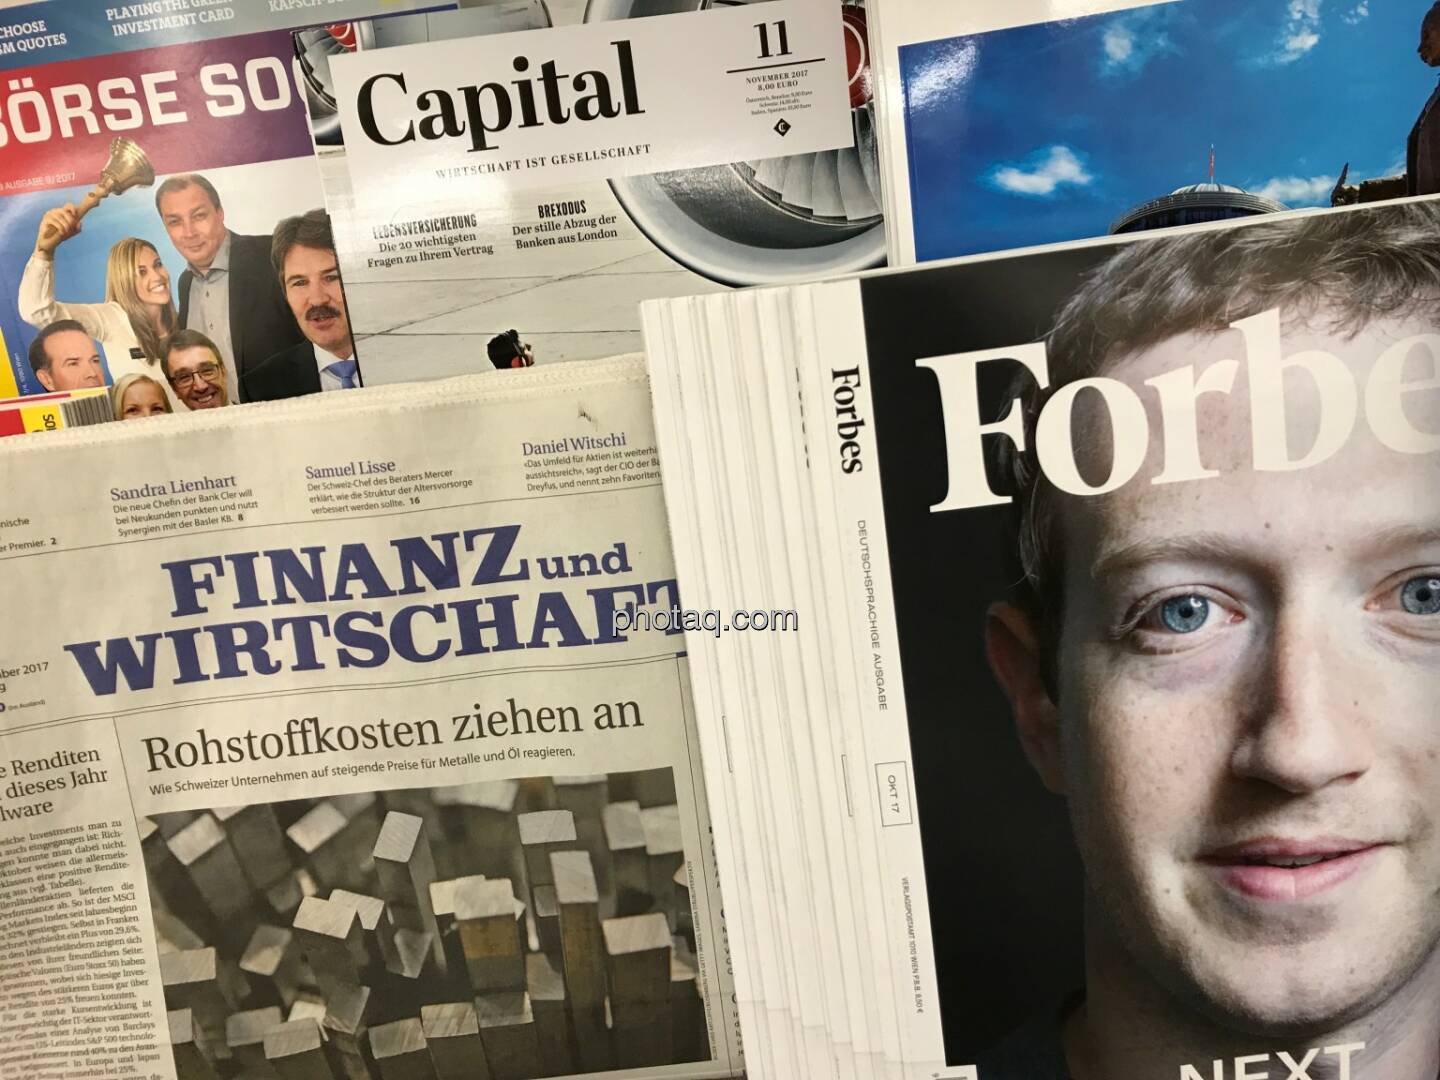 Börse Social Magazine, Finanz und Wirstschaft, Capital, Forbes Magazine, Zuckerberg - Zeitungskiosk